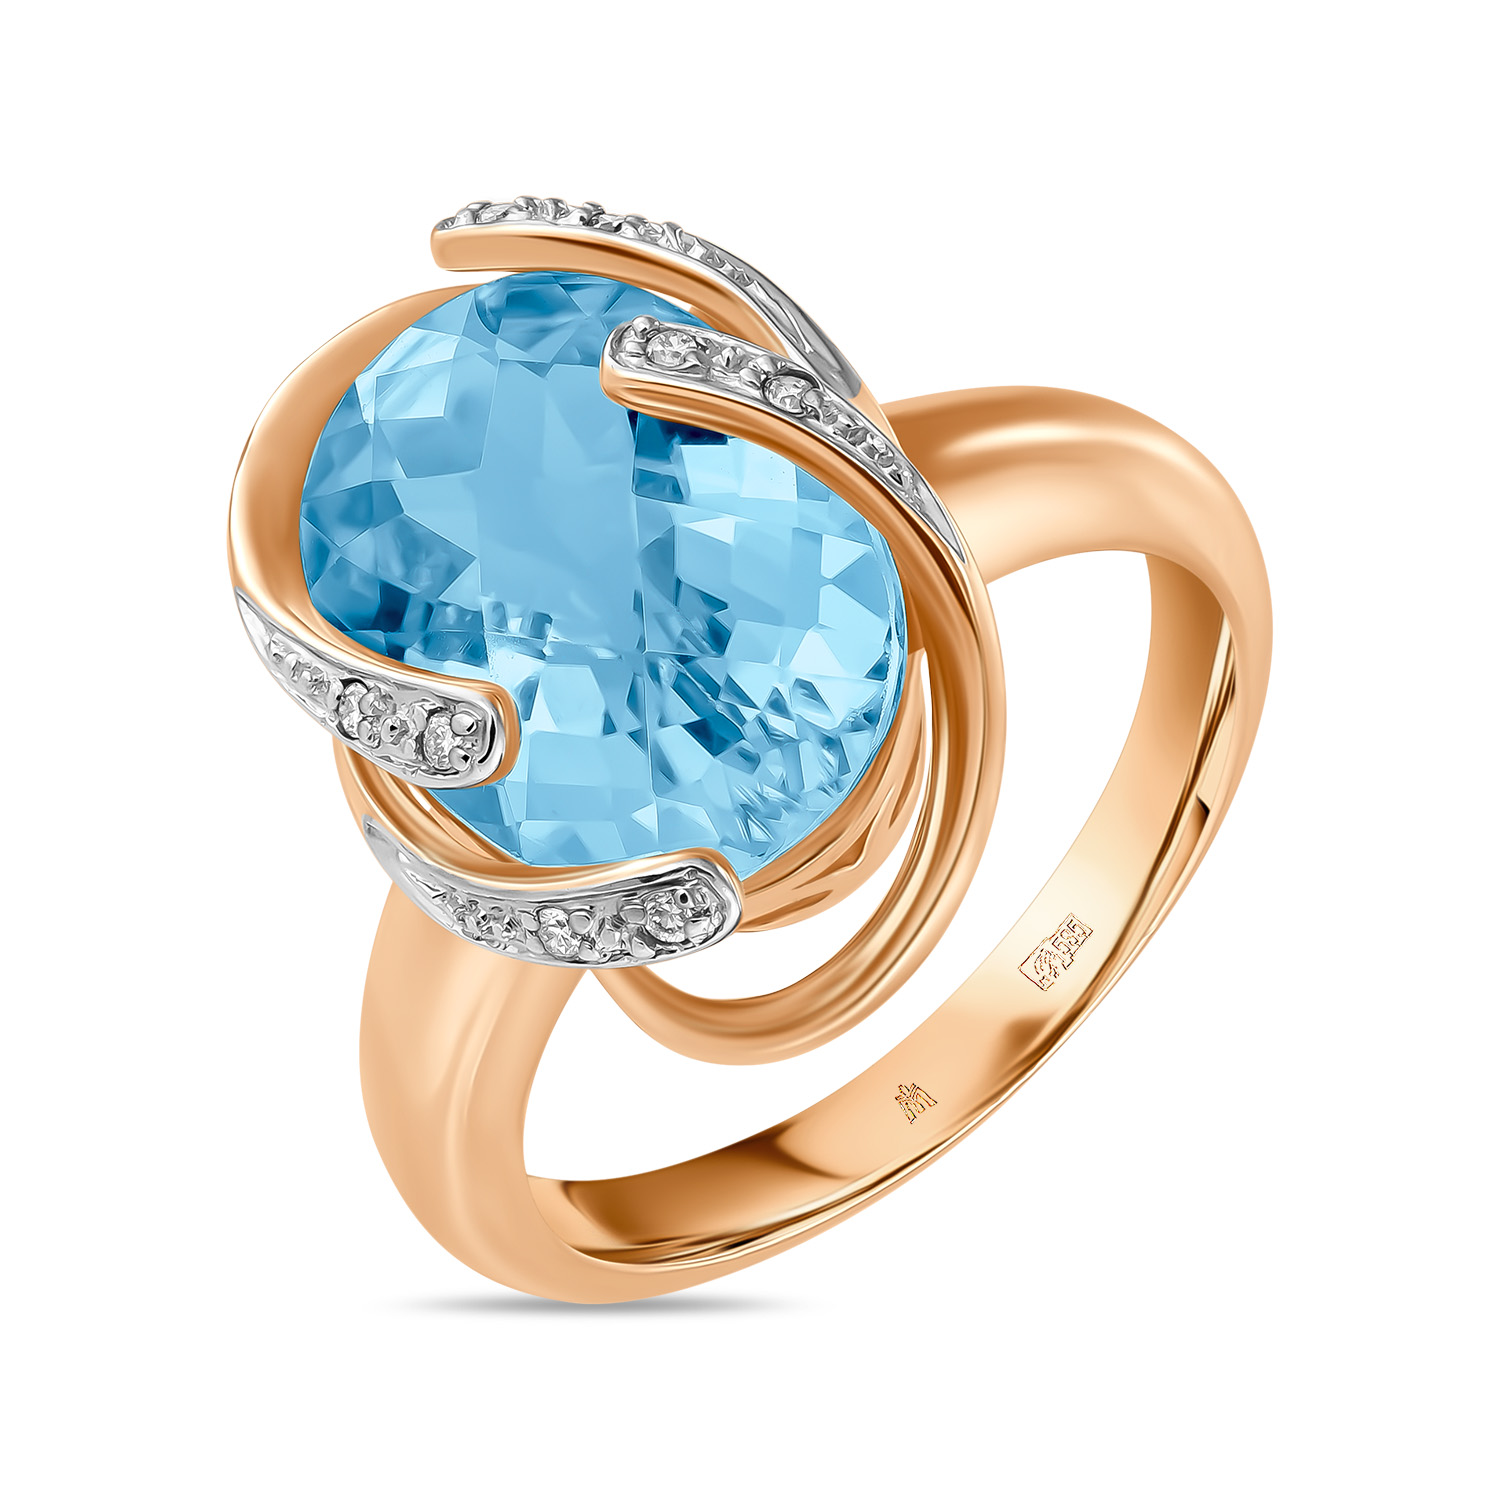 Кольца МЮЗ Золотое кольцо с топазом и бриллиантами кольца мюз золотое кольцо с топазом бриллиантами турмалином и хромдиопсидами